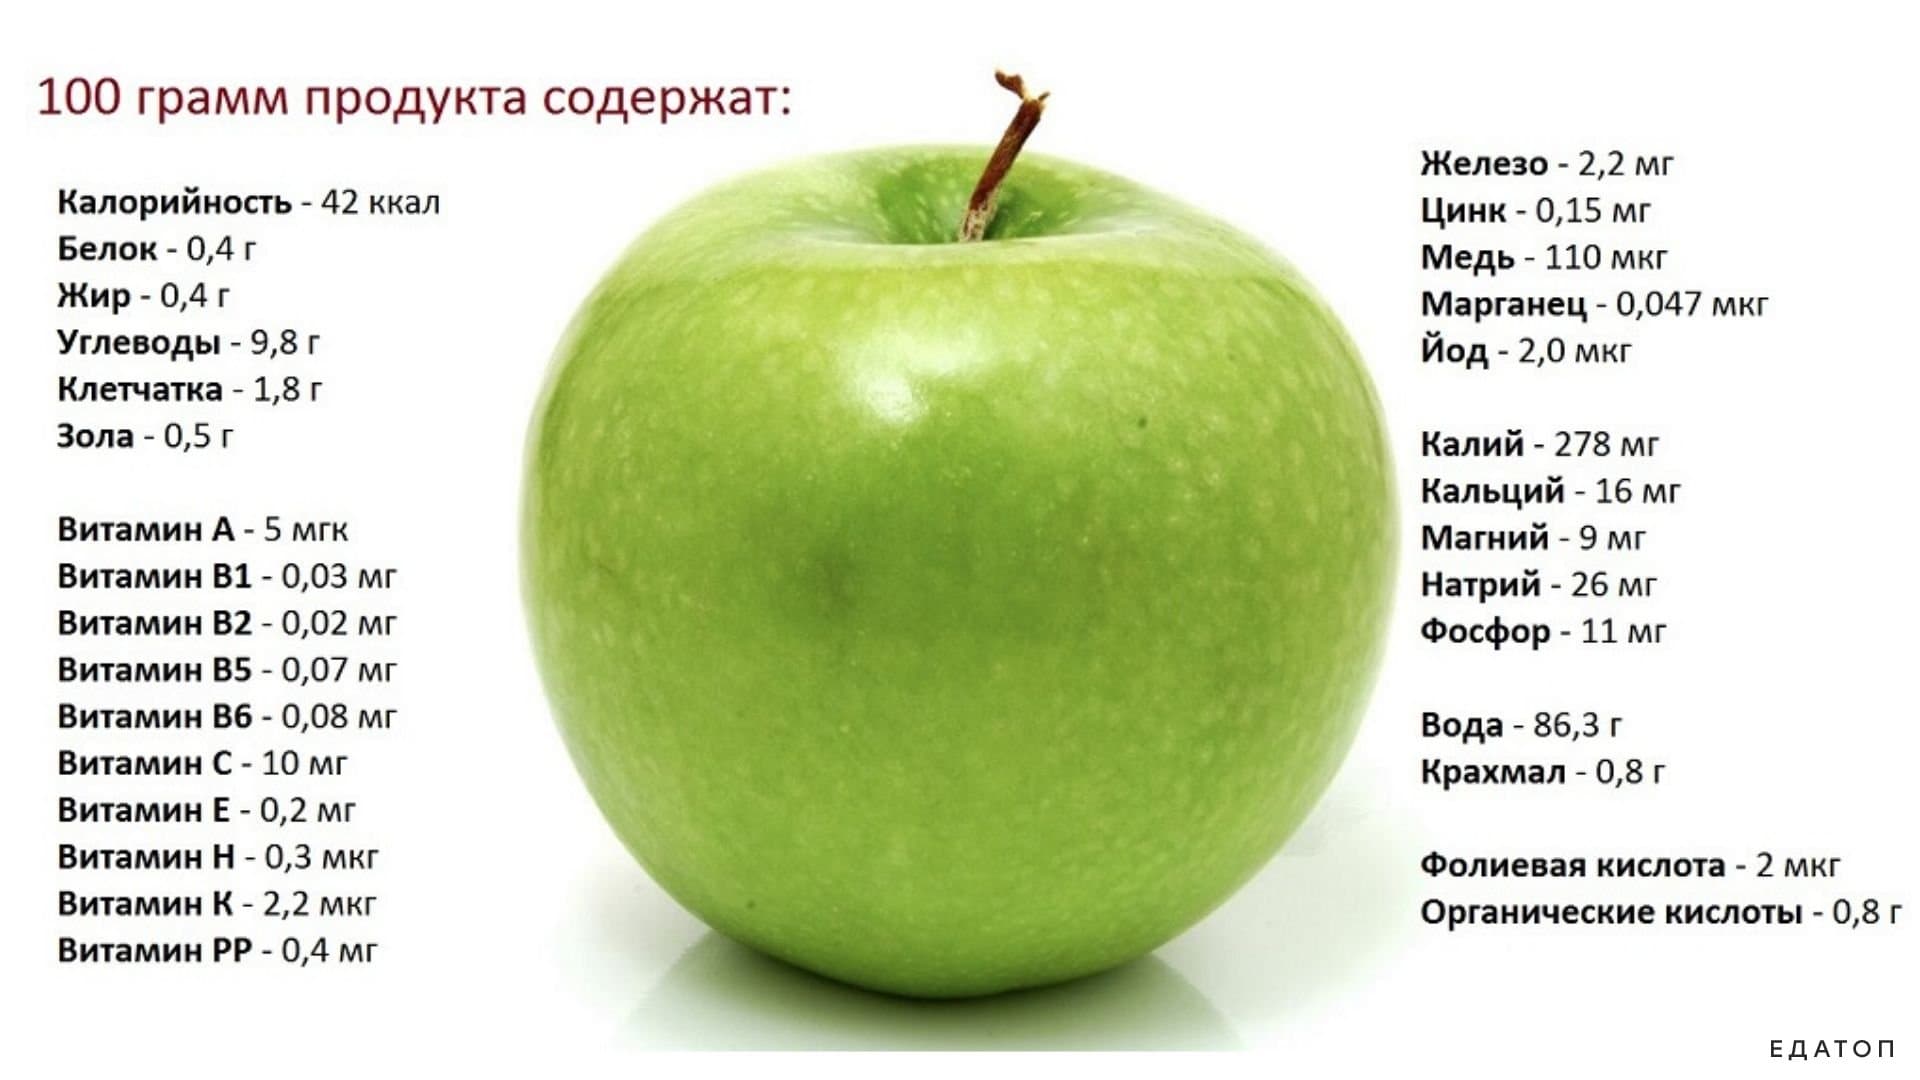 Сколько калорий в яблоке на 100 грамм, бжу в 1шт, энергетическая ценность зеленого, красного, голден, среднего размера